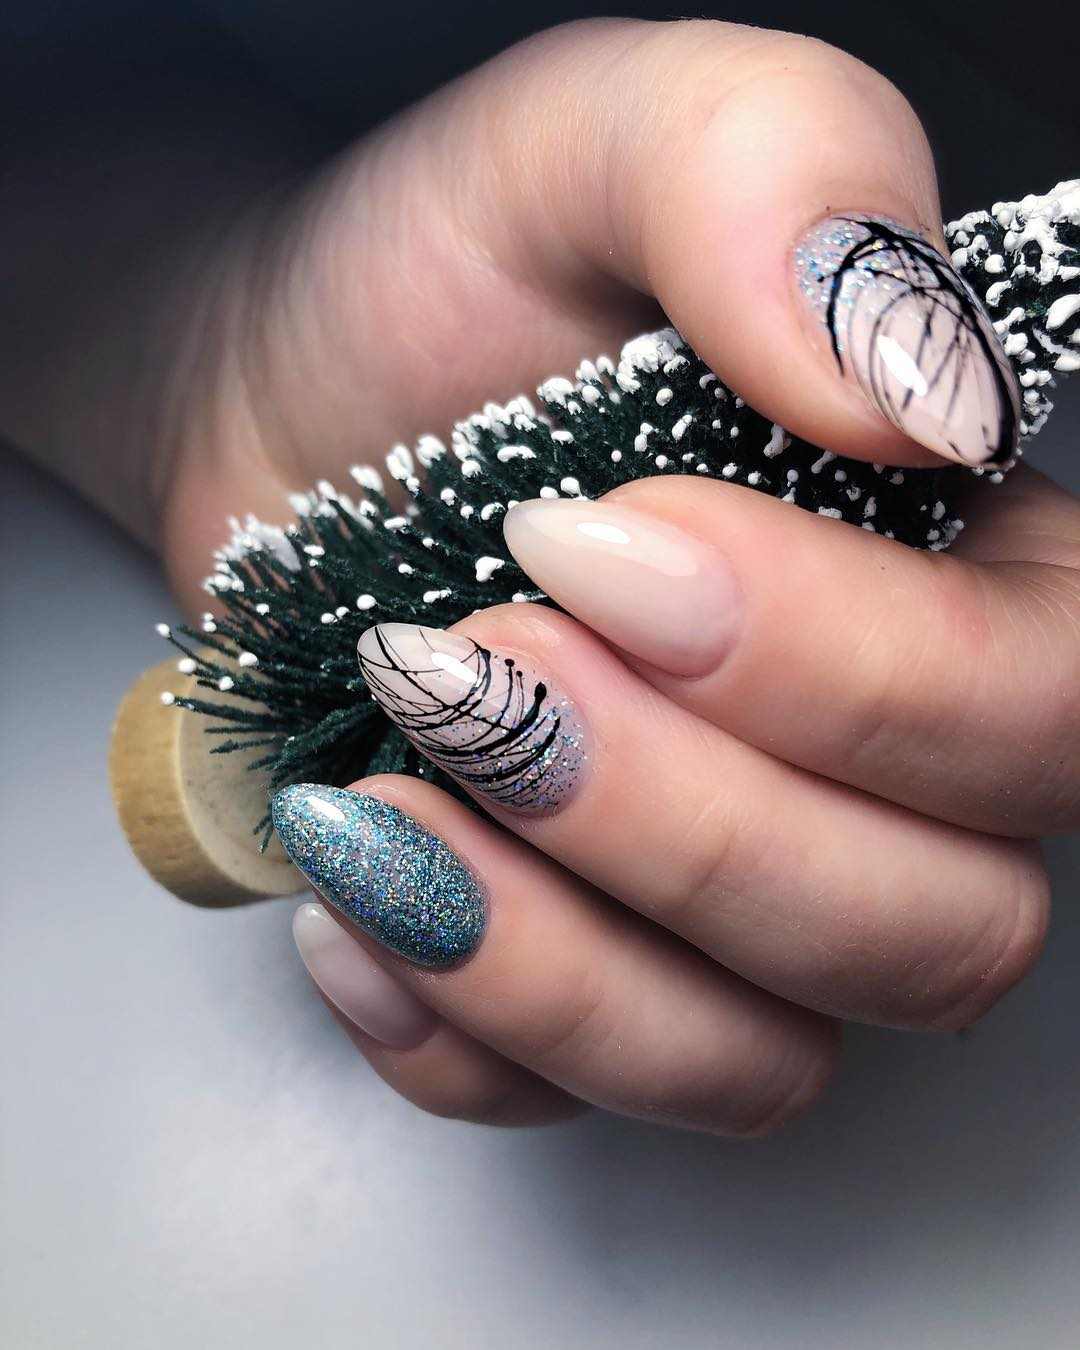 Spider gel naglar lång elegant nagel design idéer spik dekoration modetrender